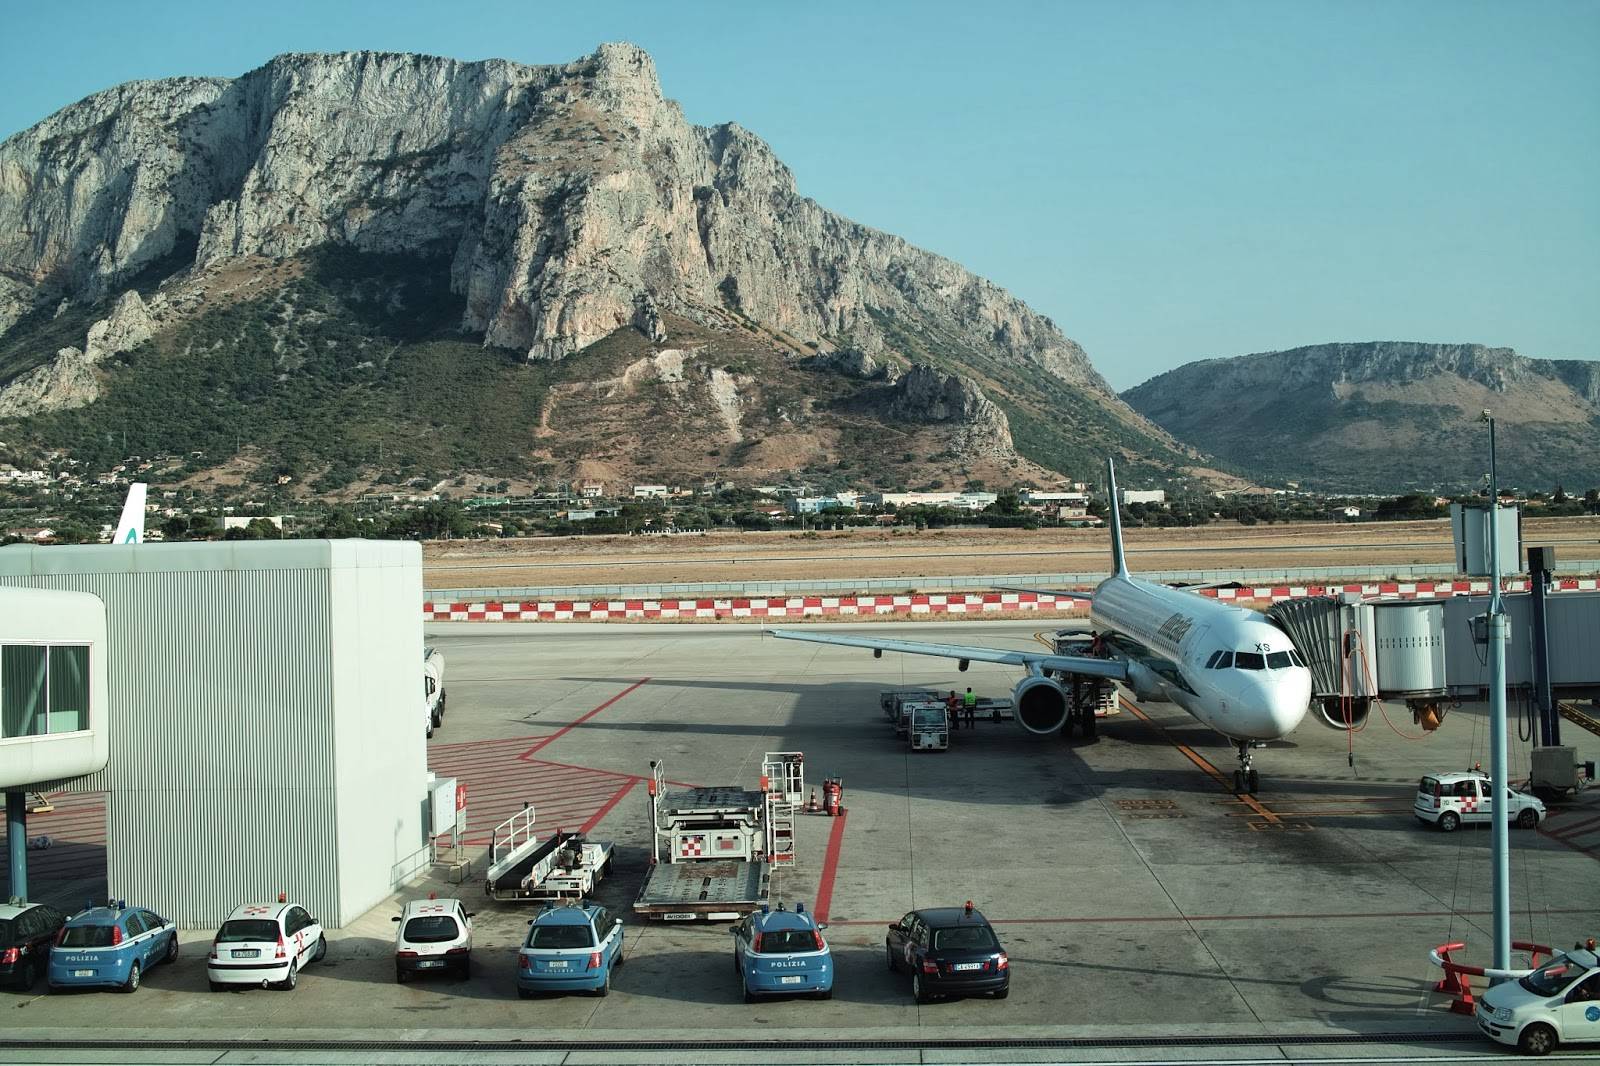 Главные аэропорты острова сицилия и их названия